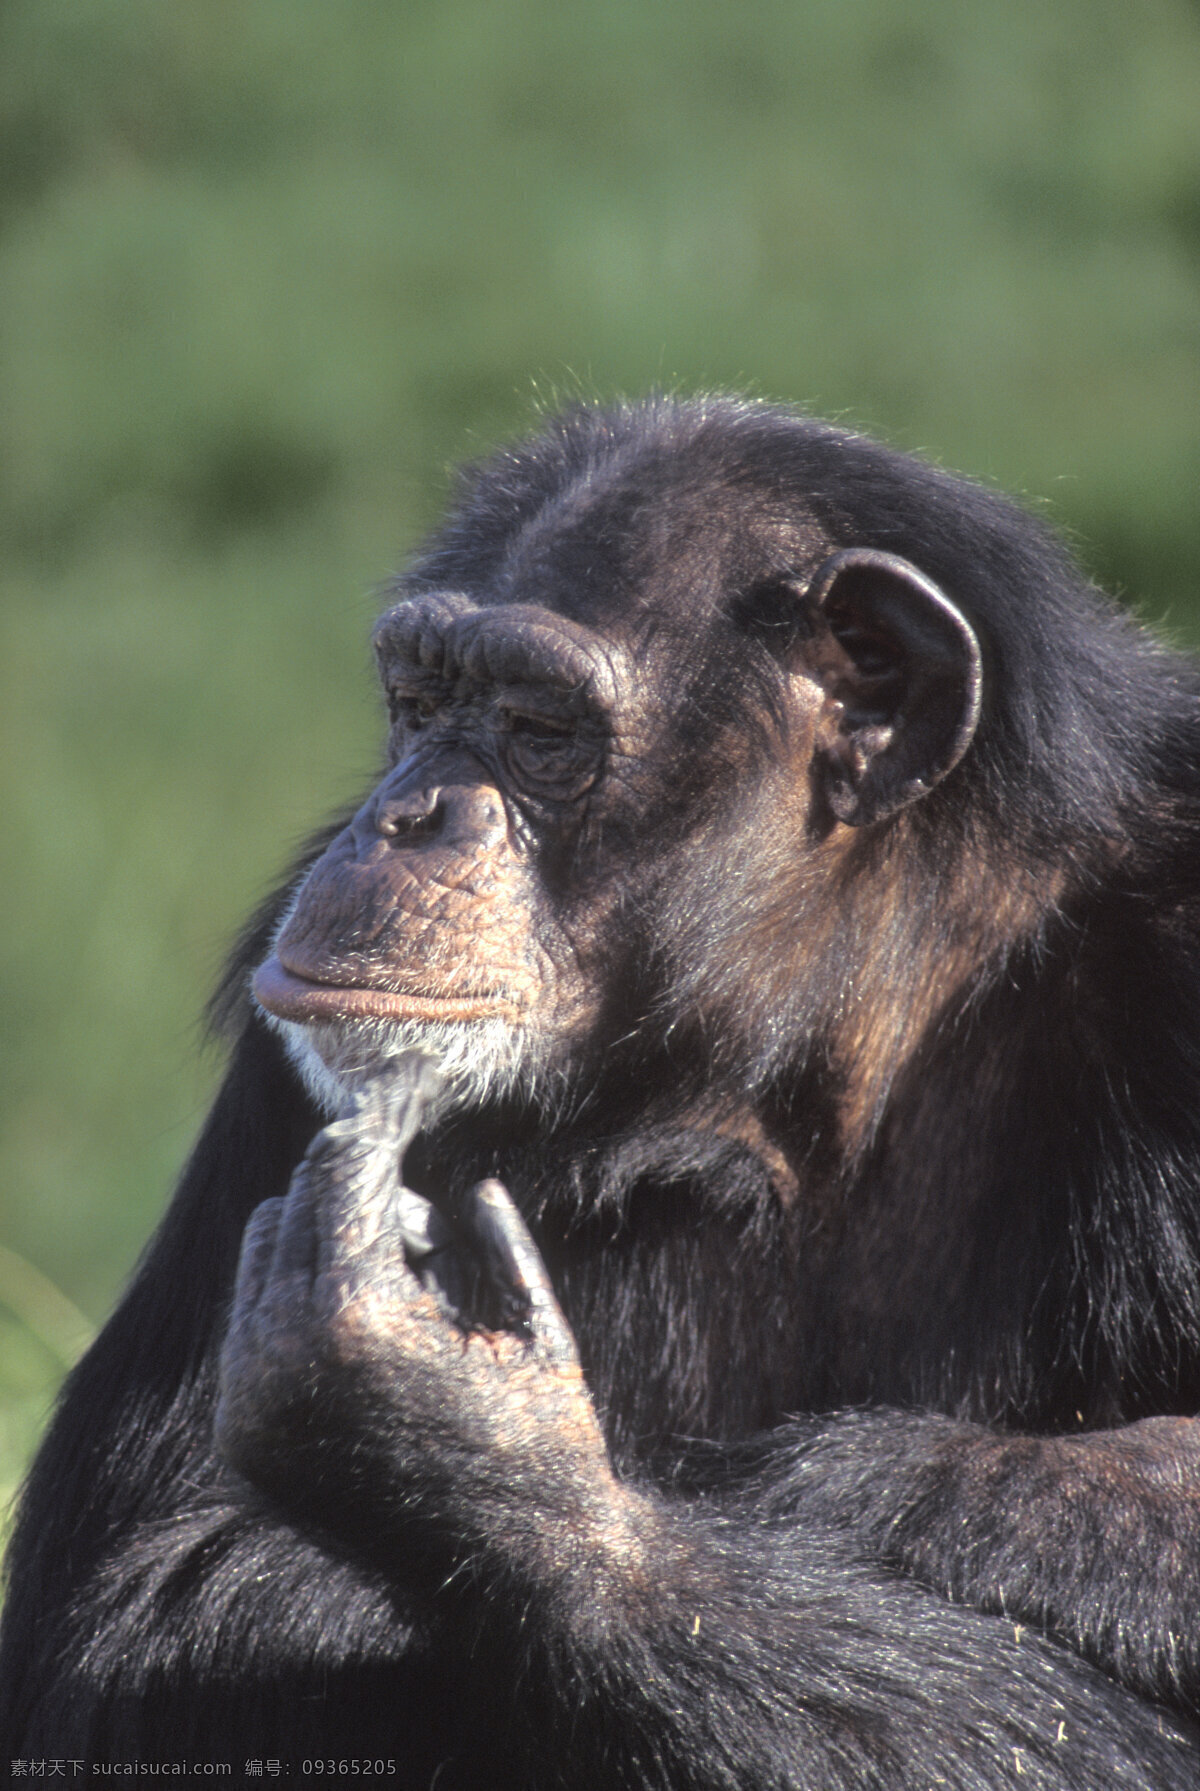 黑猩猩 大猩猩 野生动物 动物世界 摄影图 陆地动物 生物世界